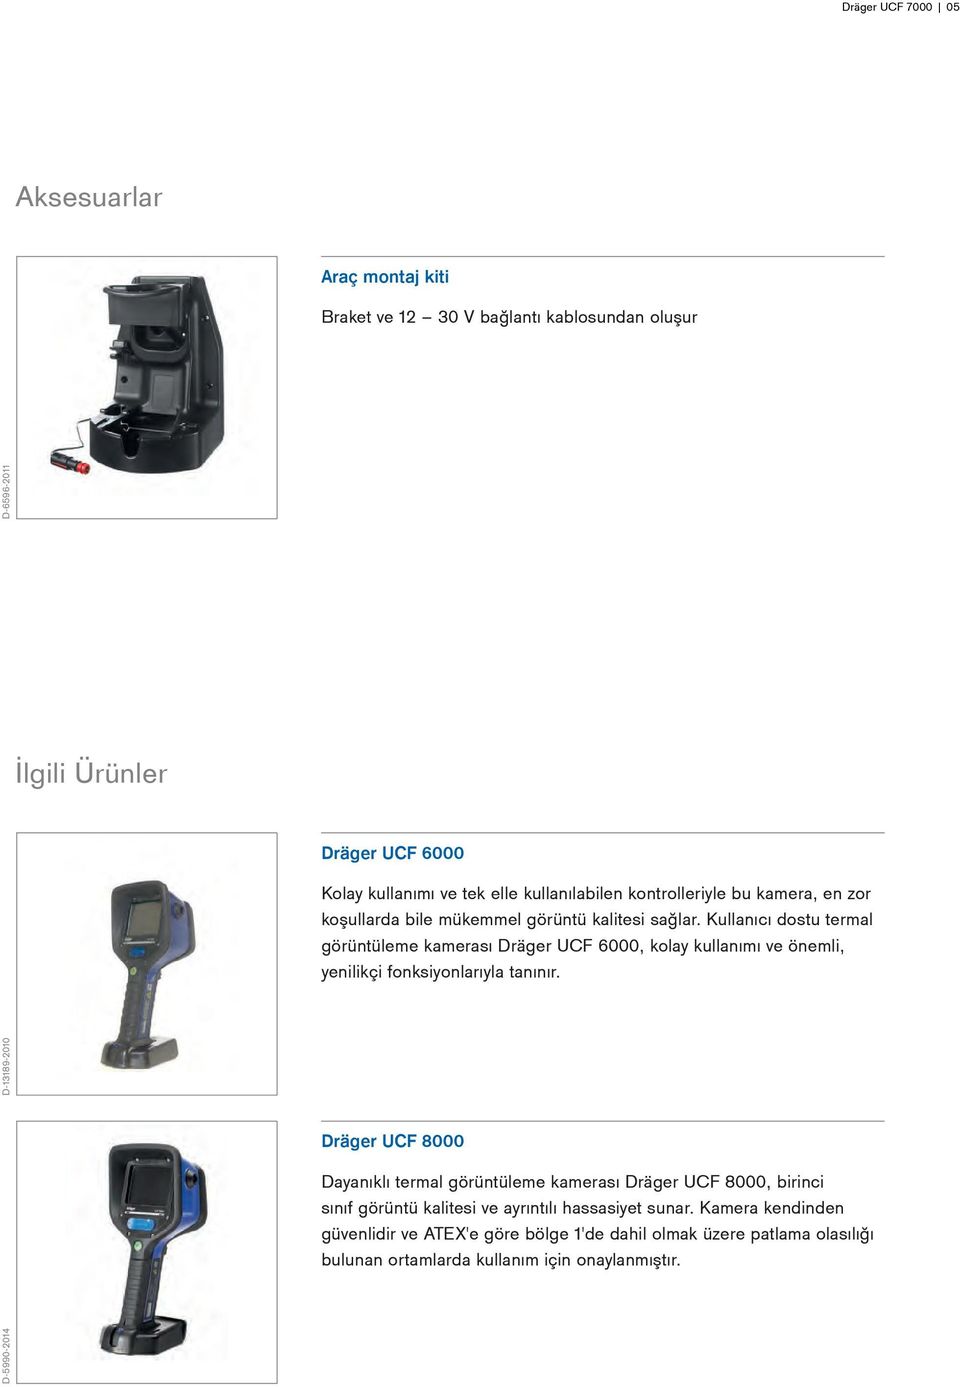 Kullanıcı dostu termal görüntüleme kamerası Dräger UCF 6000, kolay kullanımı ve önemli, yenilikçi fonksiyonlarıyla tanınır.